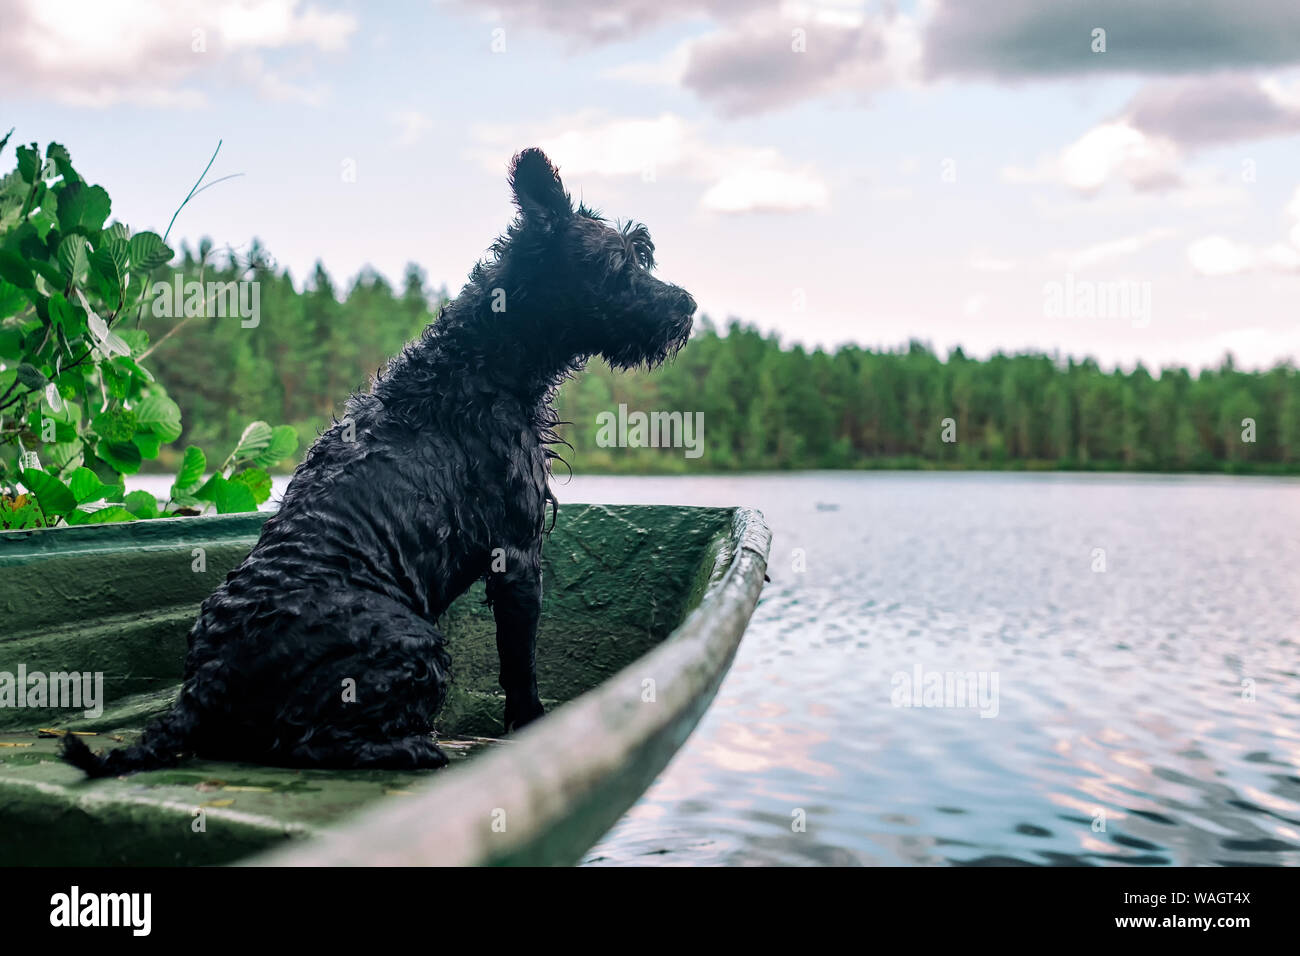 Hund Miniatur schwarz Schnauzer in einem hölzernen Boot auf dem See Stockfoto